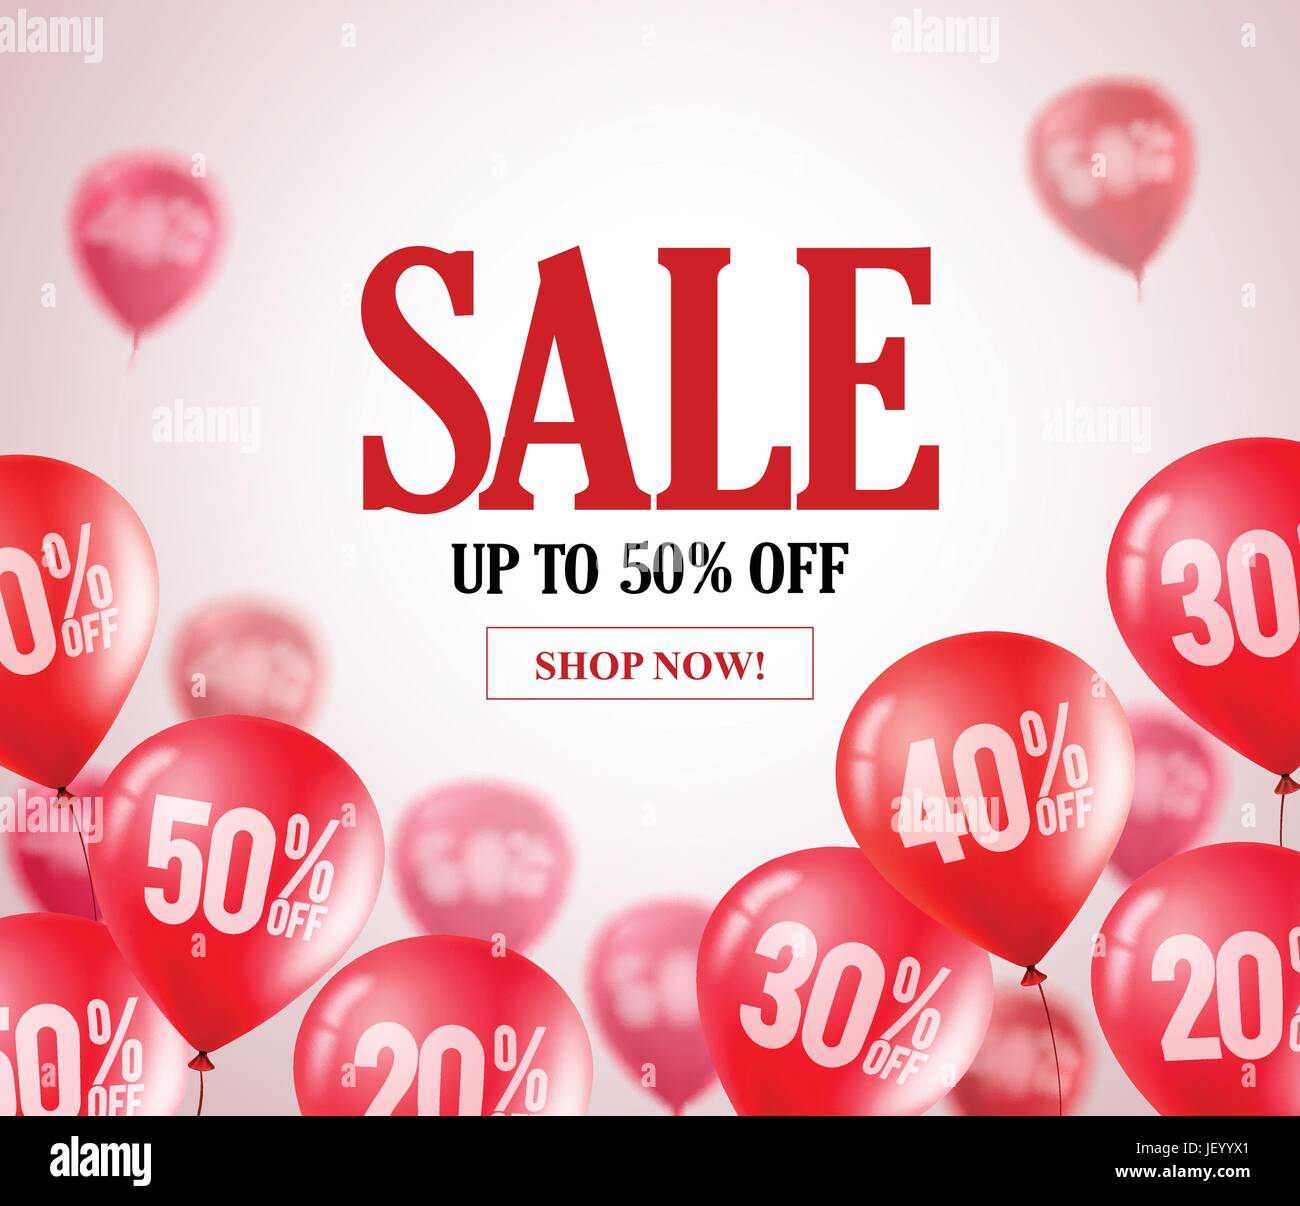 Verkauf rote Ballons Vektor-Banner. Wegfliegende rote Luftballons mit 50 Prozent in einen Hintergrund für Laden-marketing-Aktionen und Veranstaltungen. Stock Vektor